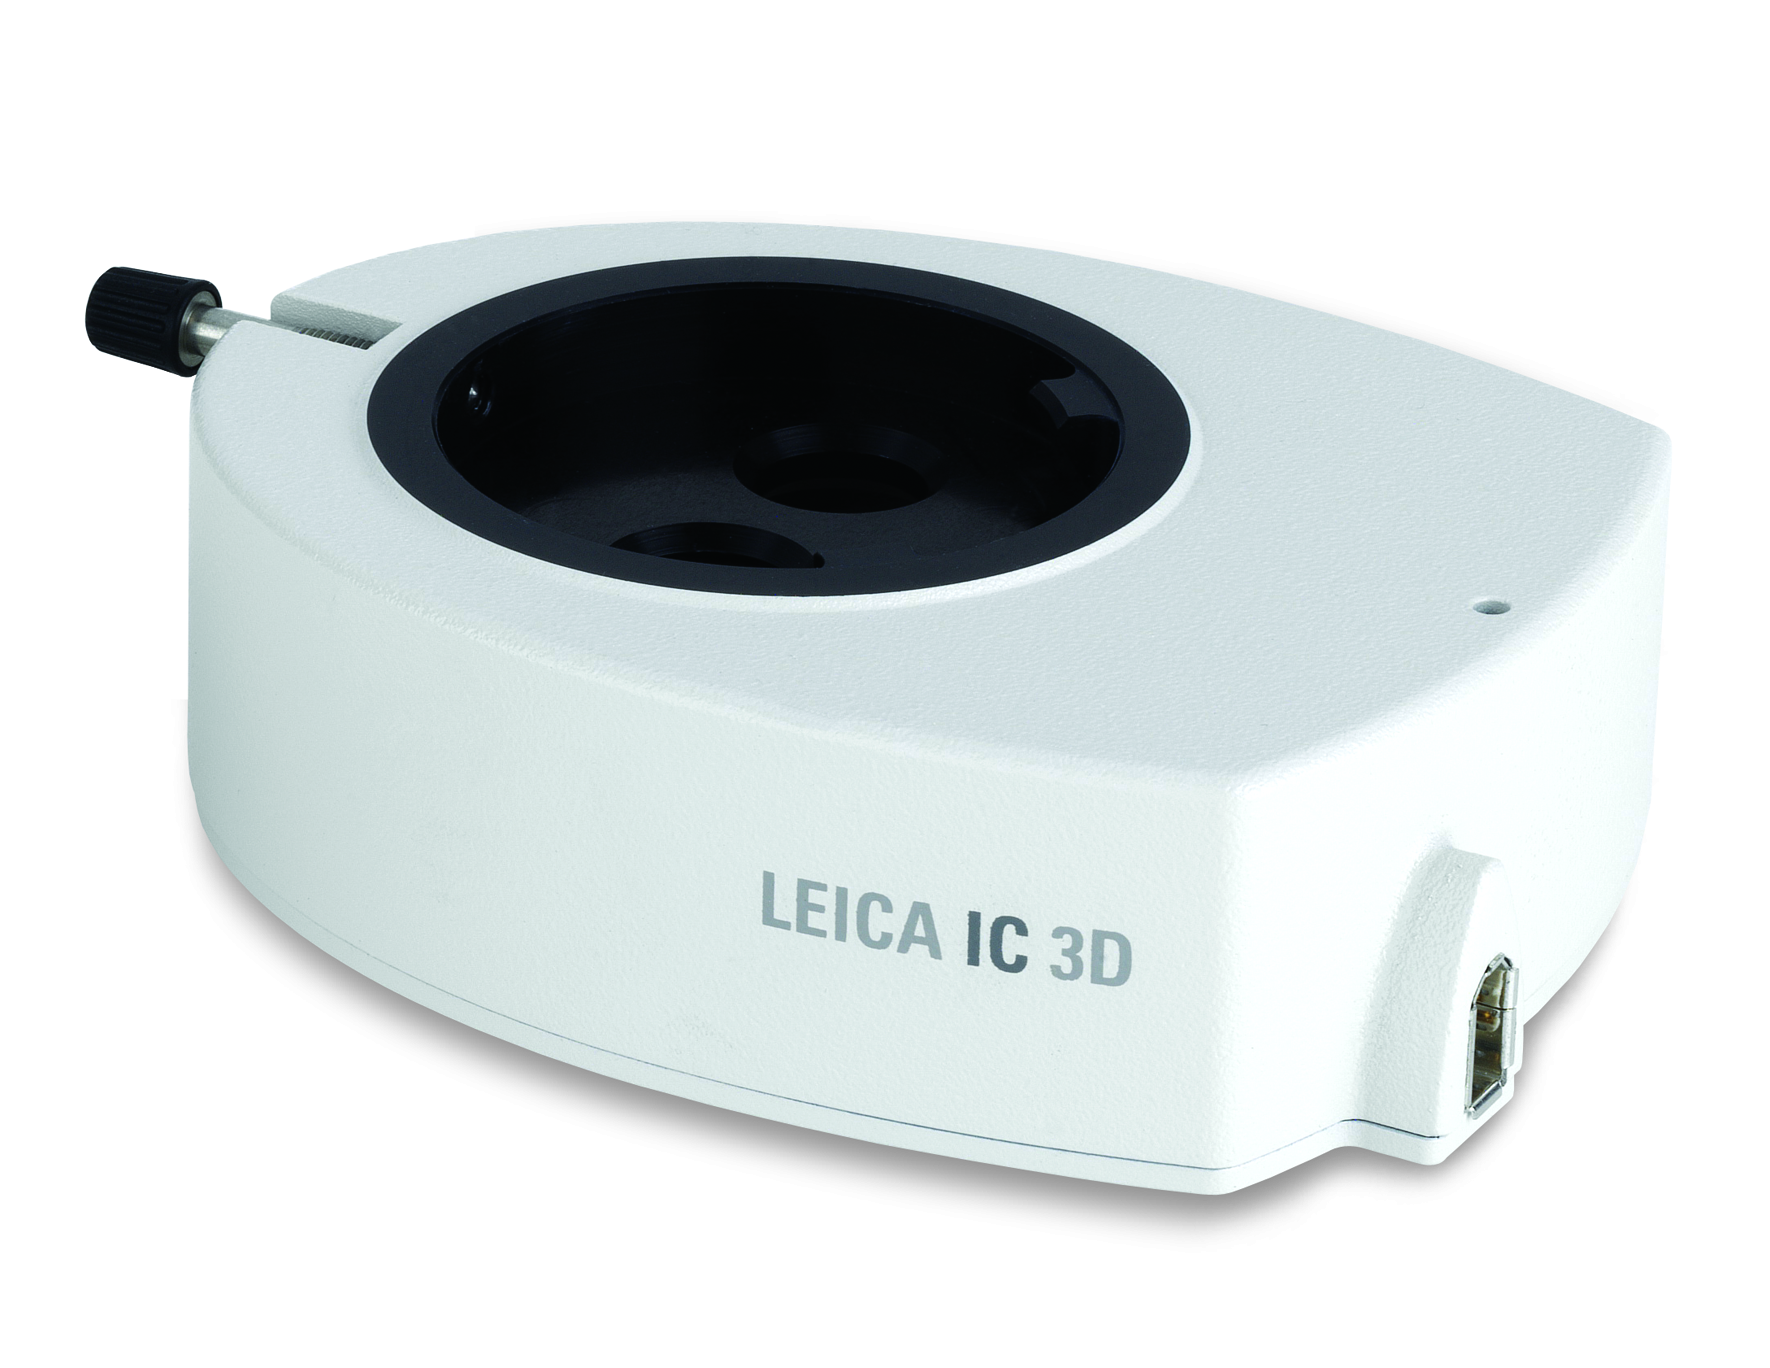 Un'immagine 3D completa dei campioni al microscopio, osservati tramite gli oculari su schermo sarà a portata di mano grazie alla fotocamera Leica IC 3D.